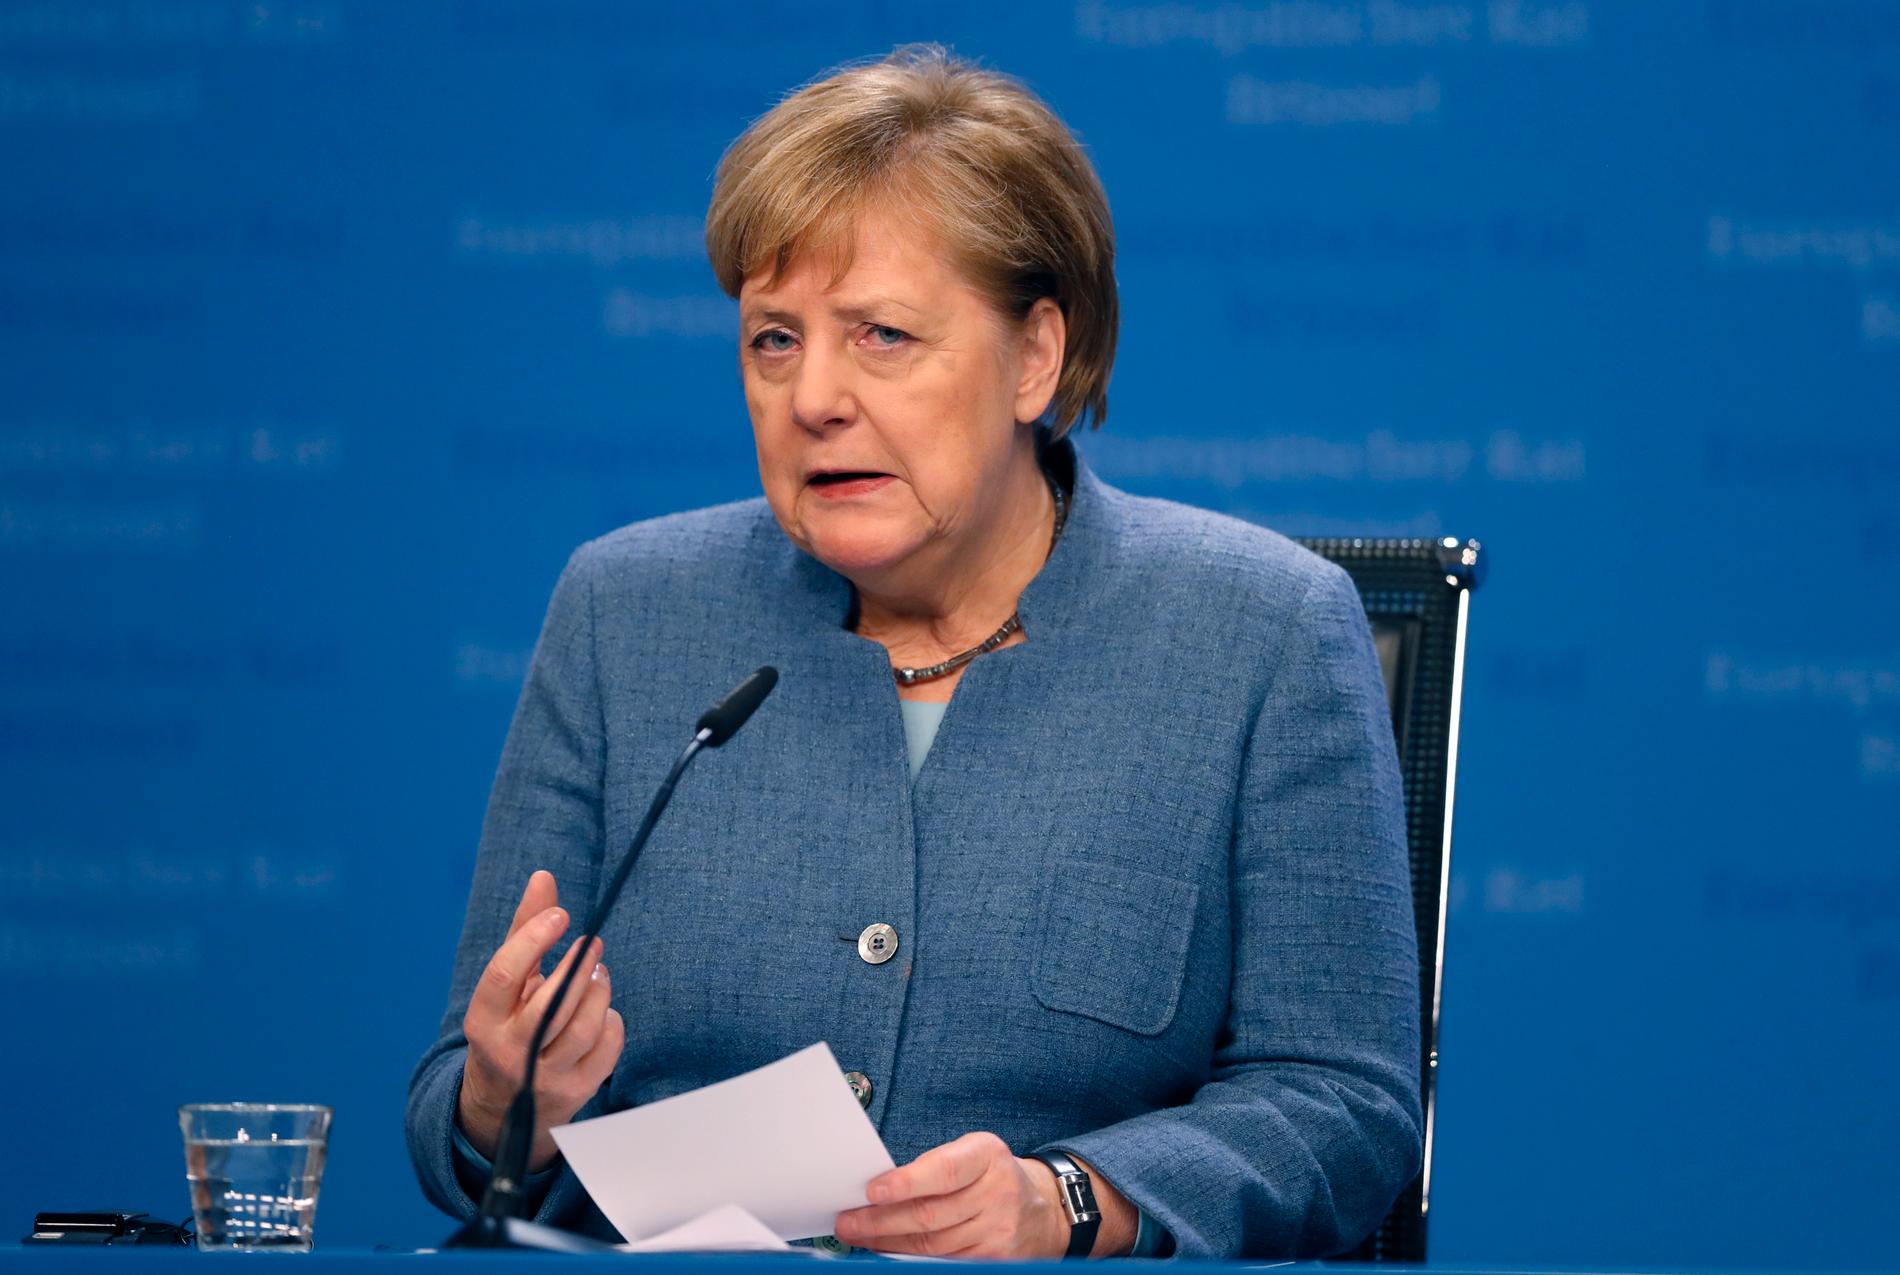 Privata uppgifter om omkring tusen personer – däribland hundratals tyska politiker – har spridits på nätet. Även förbundskansler Angela Merkel är drabbad. Arkivbild.